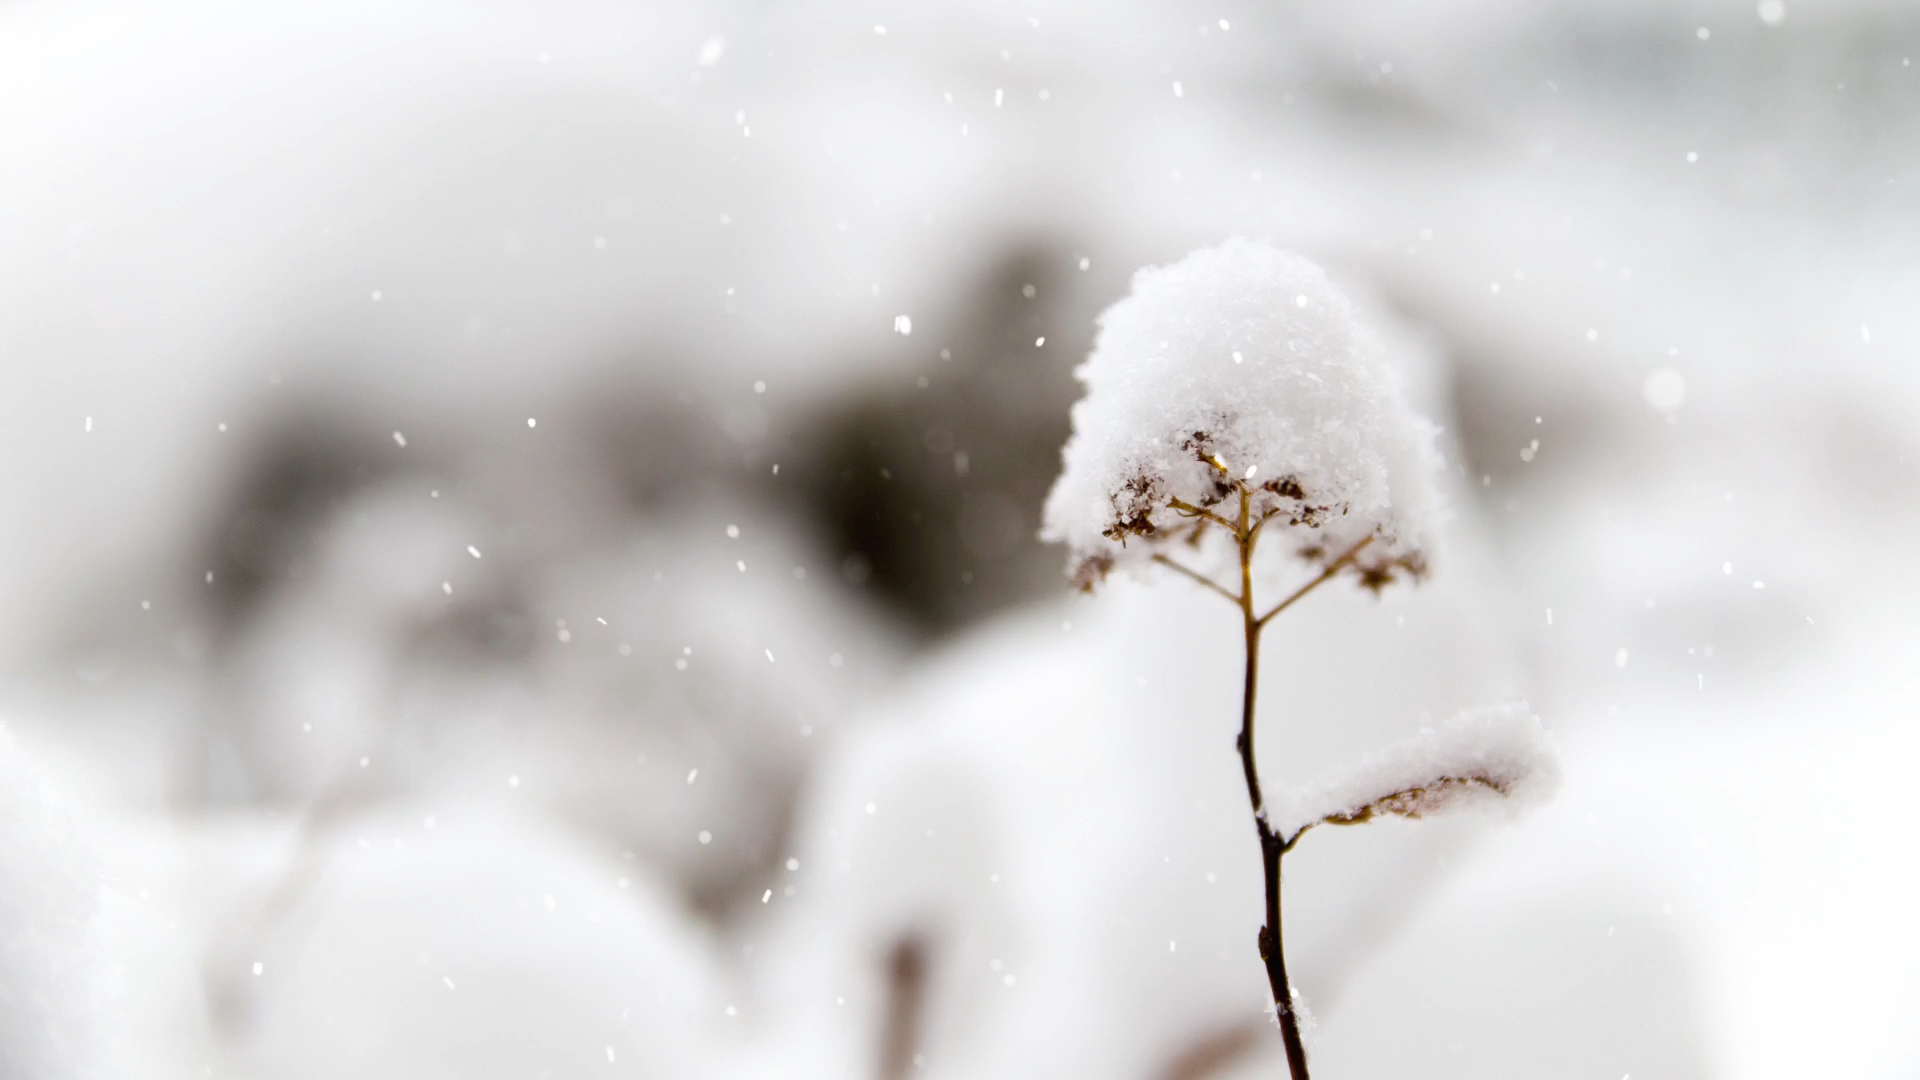 免费照片： 冷, 详细信息, 霜, 冻结, 冰水晶, 雪花, 单色, 冬天, 霜, 雪